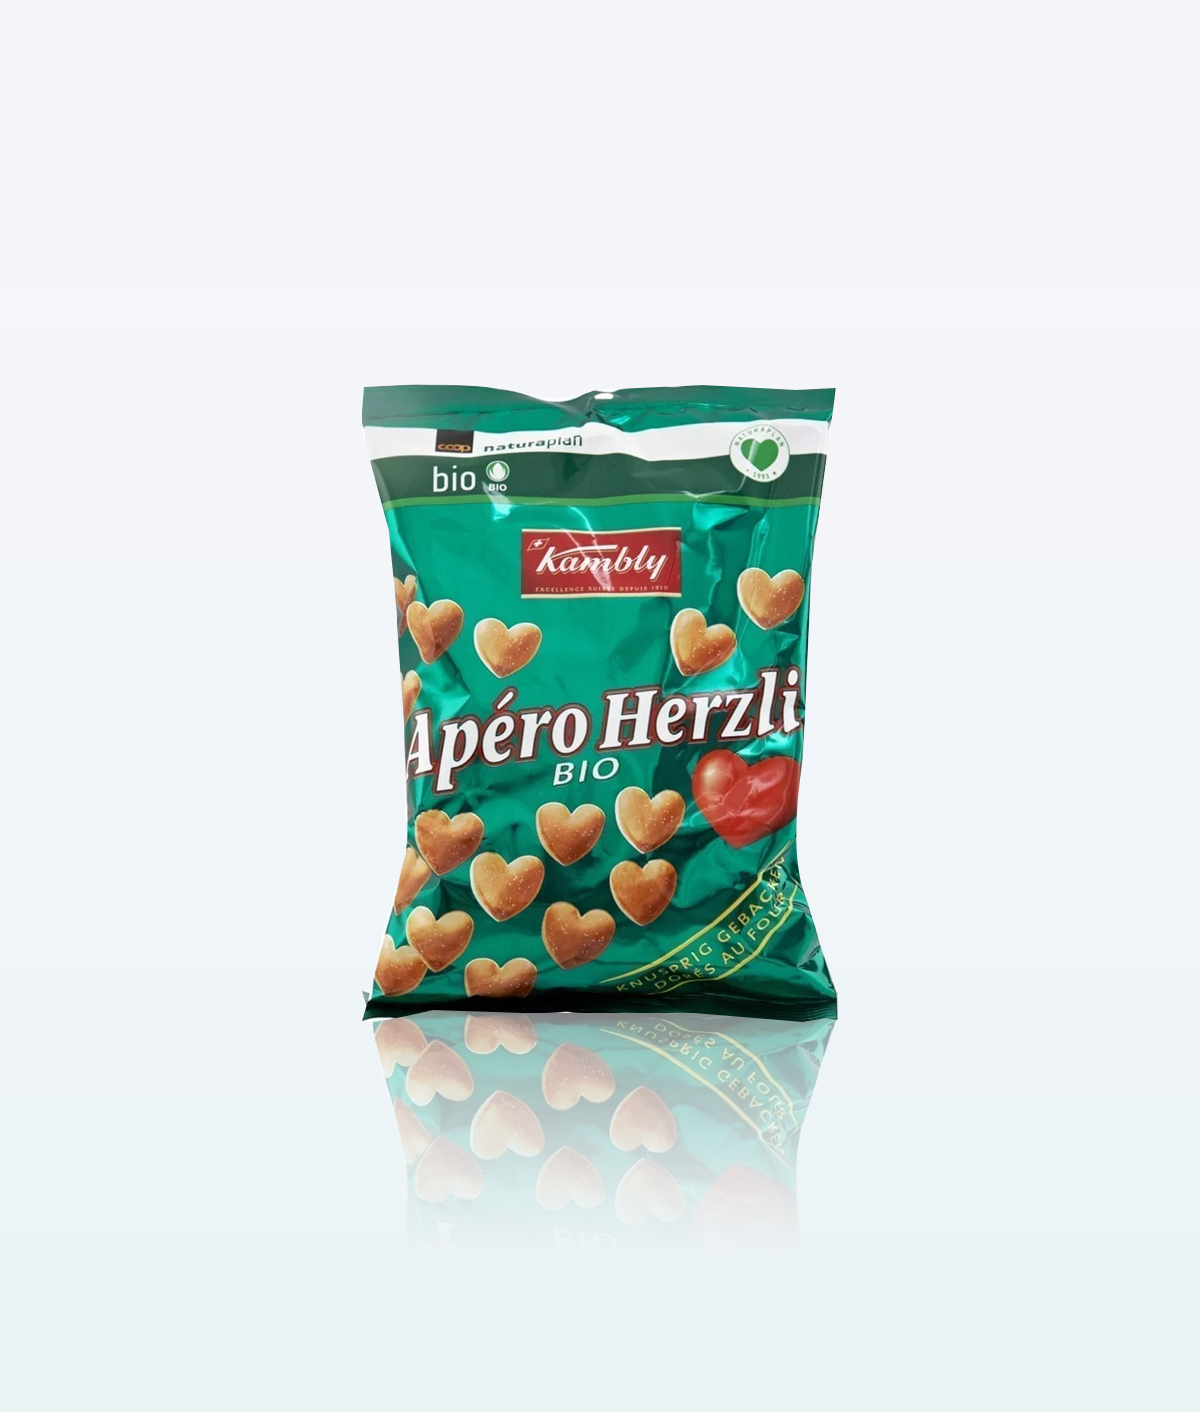 Kambly Naturalplan Bio croquants Crackers Apero Herzli 160g